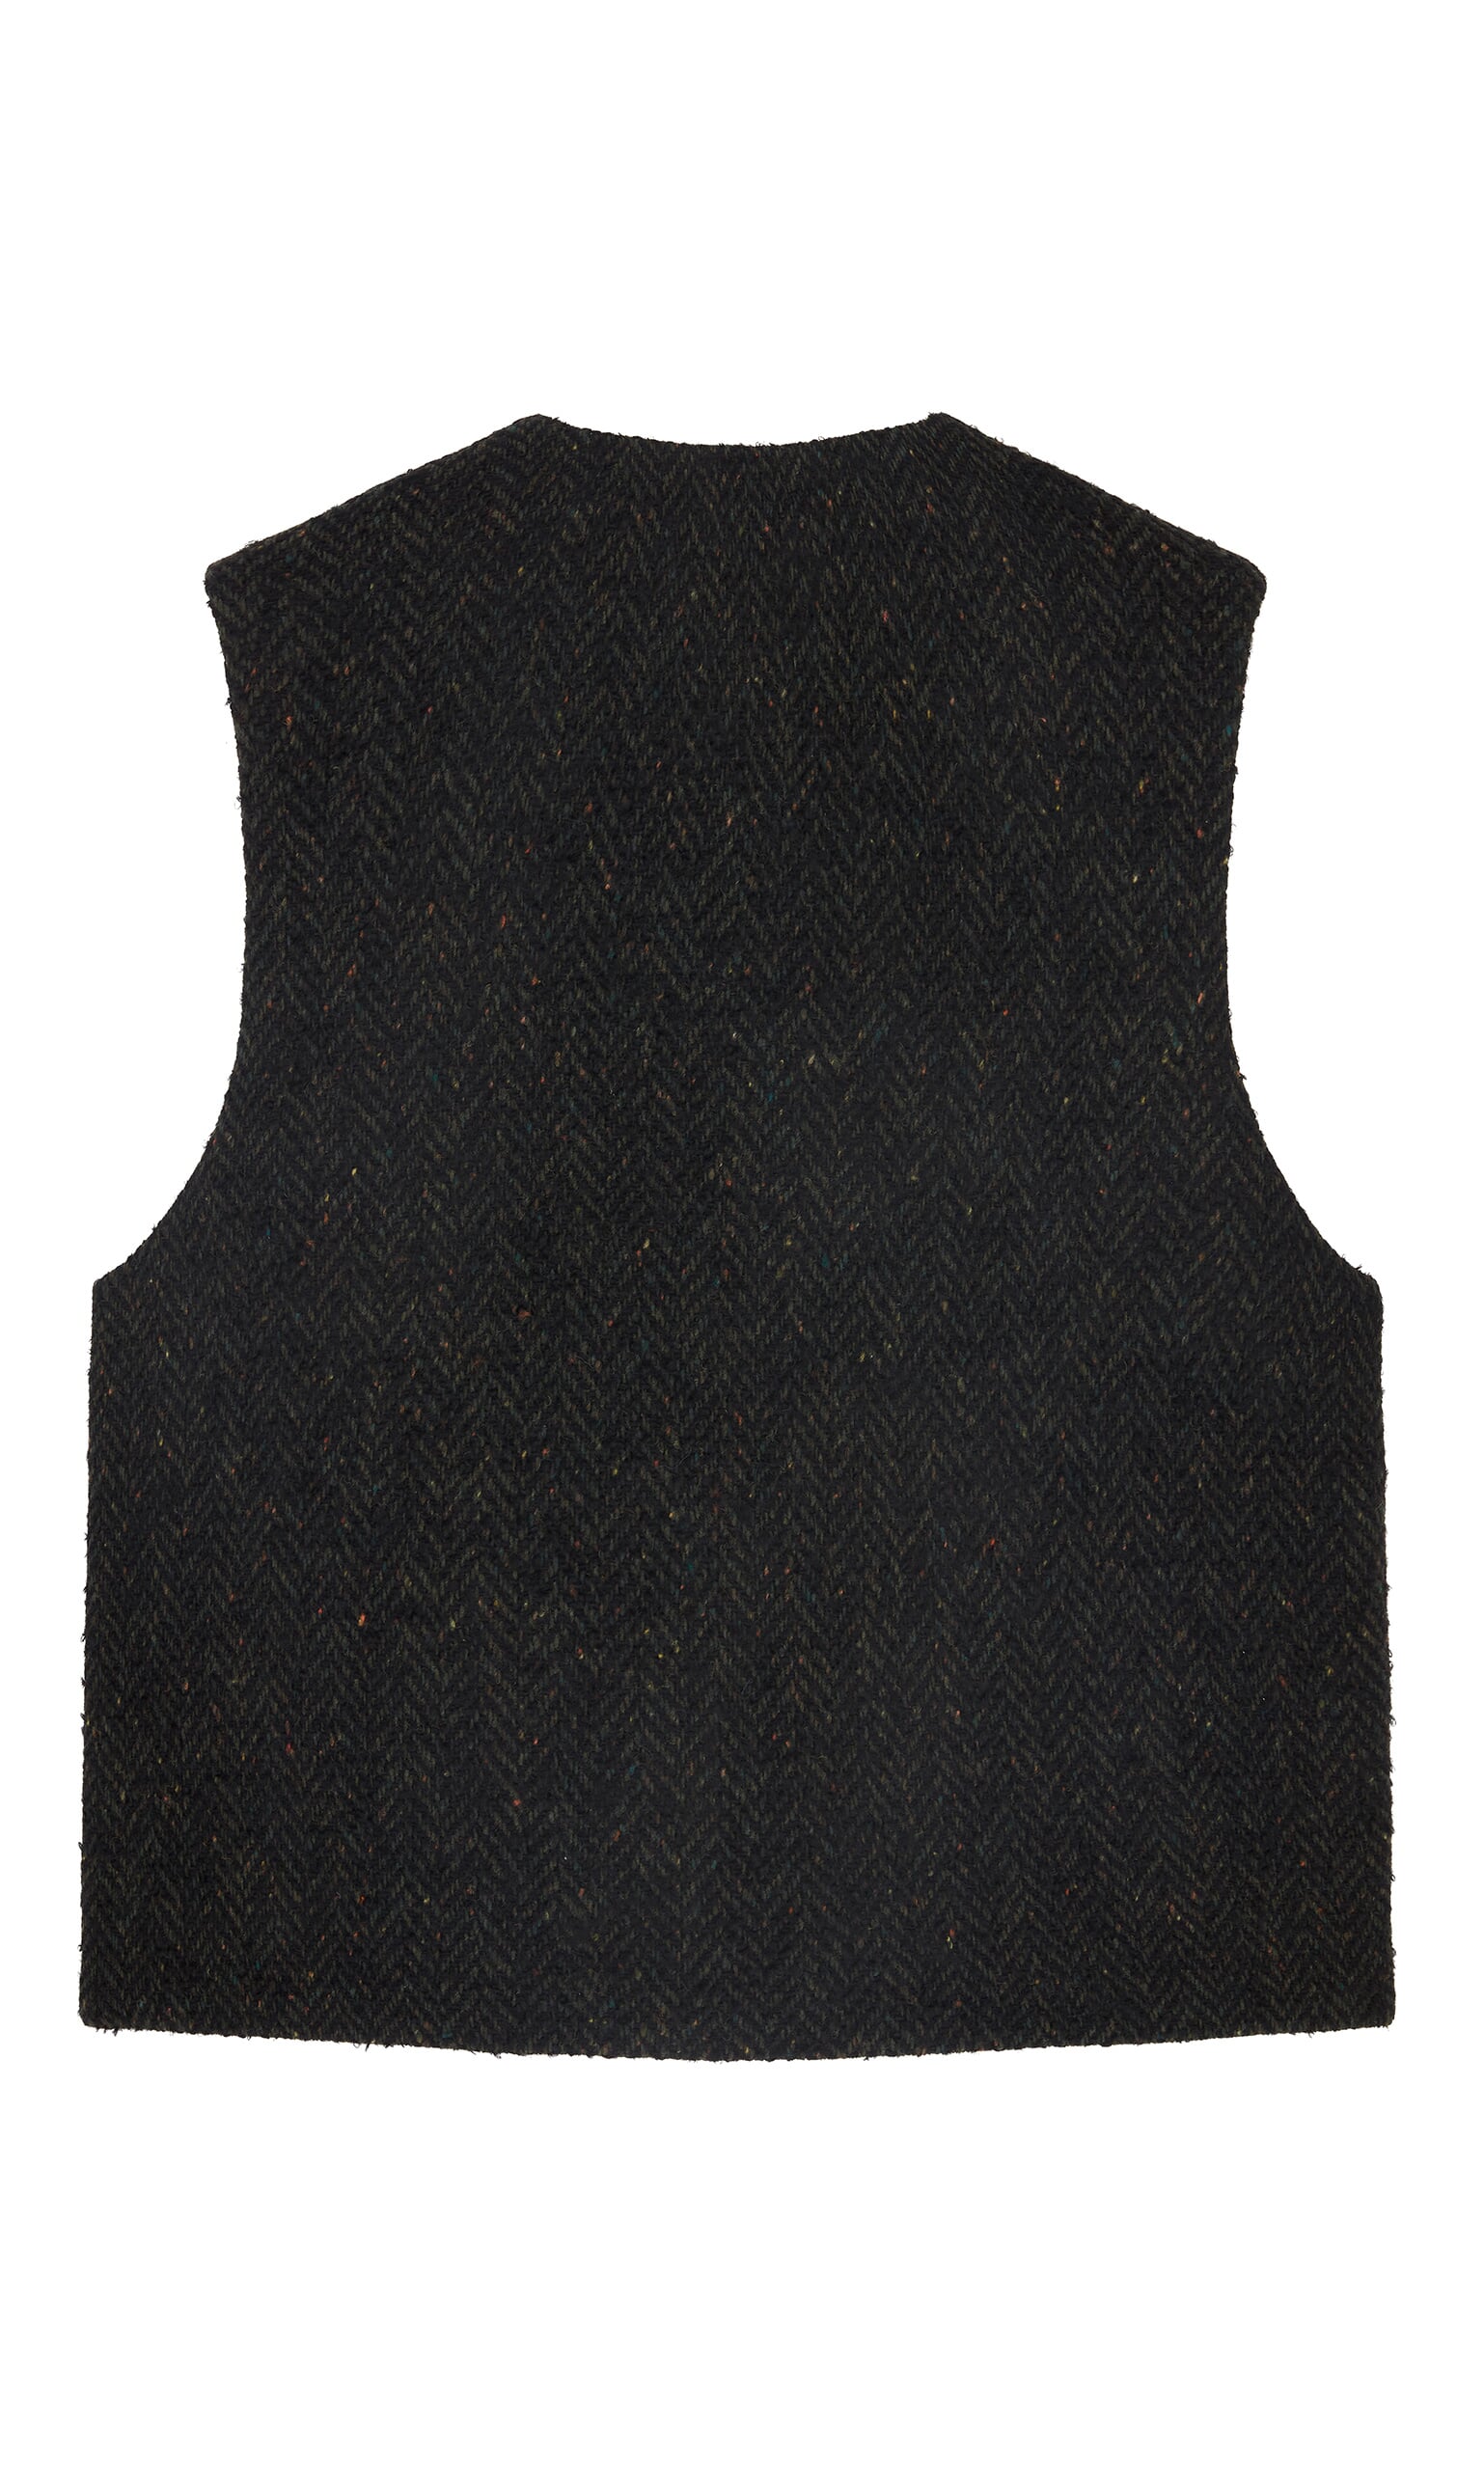 Marsden waistcoat - Plümo Ltd